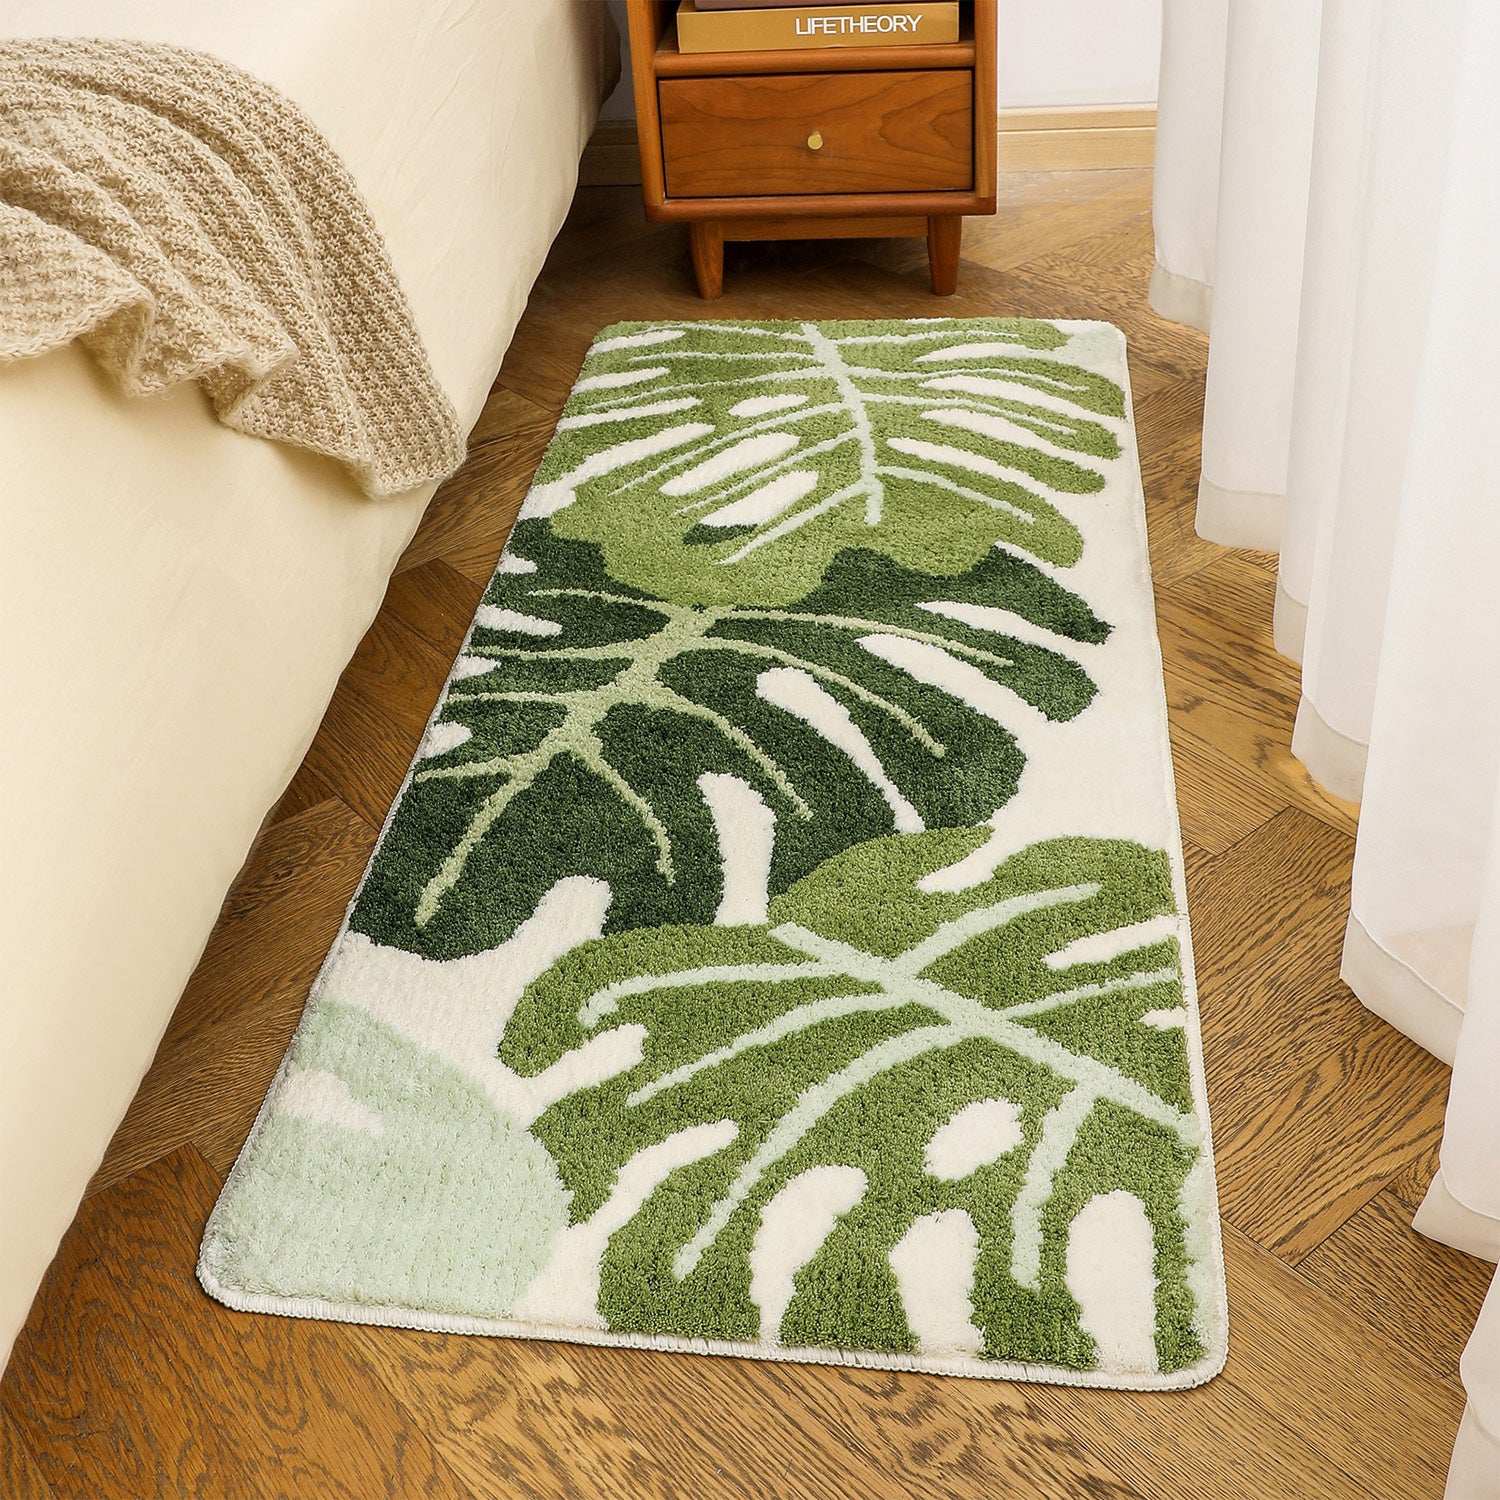 Feblilac Green Monstera Leaves Runner Mat, Tufted Mat for Bedroom or Bathroom, 19.7"x47.2"